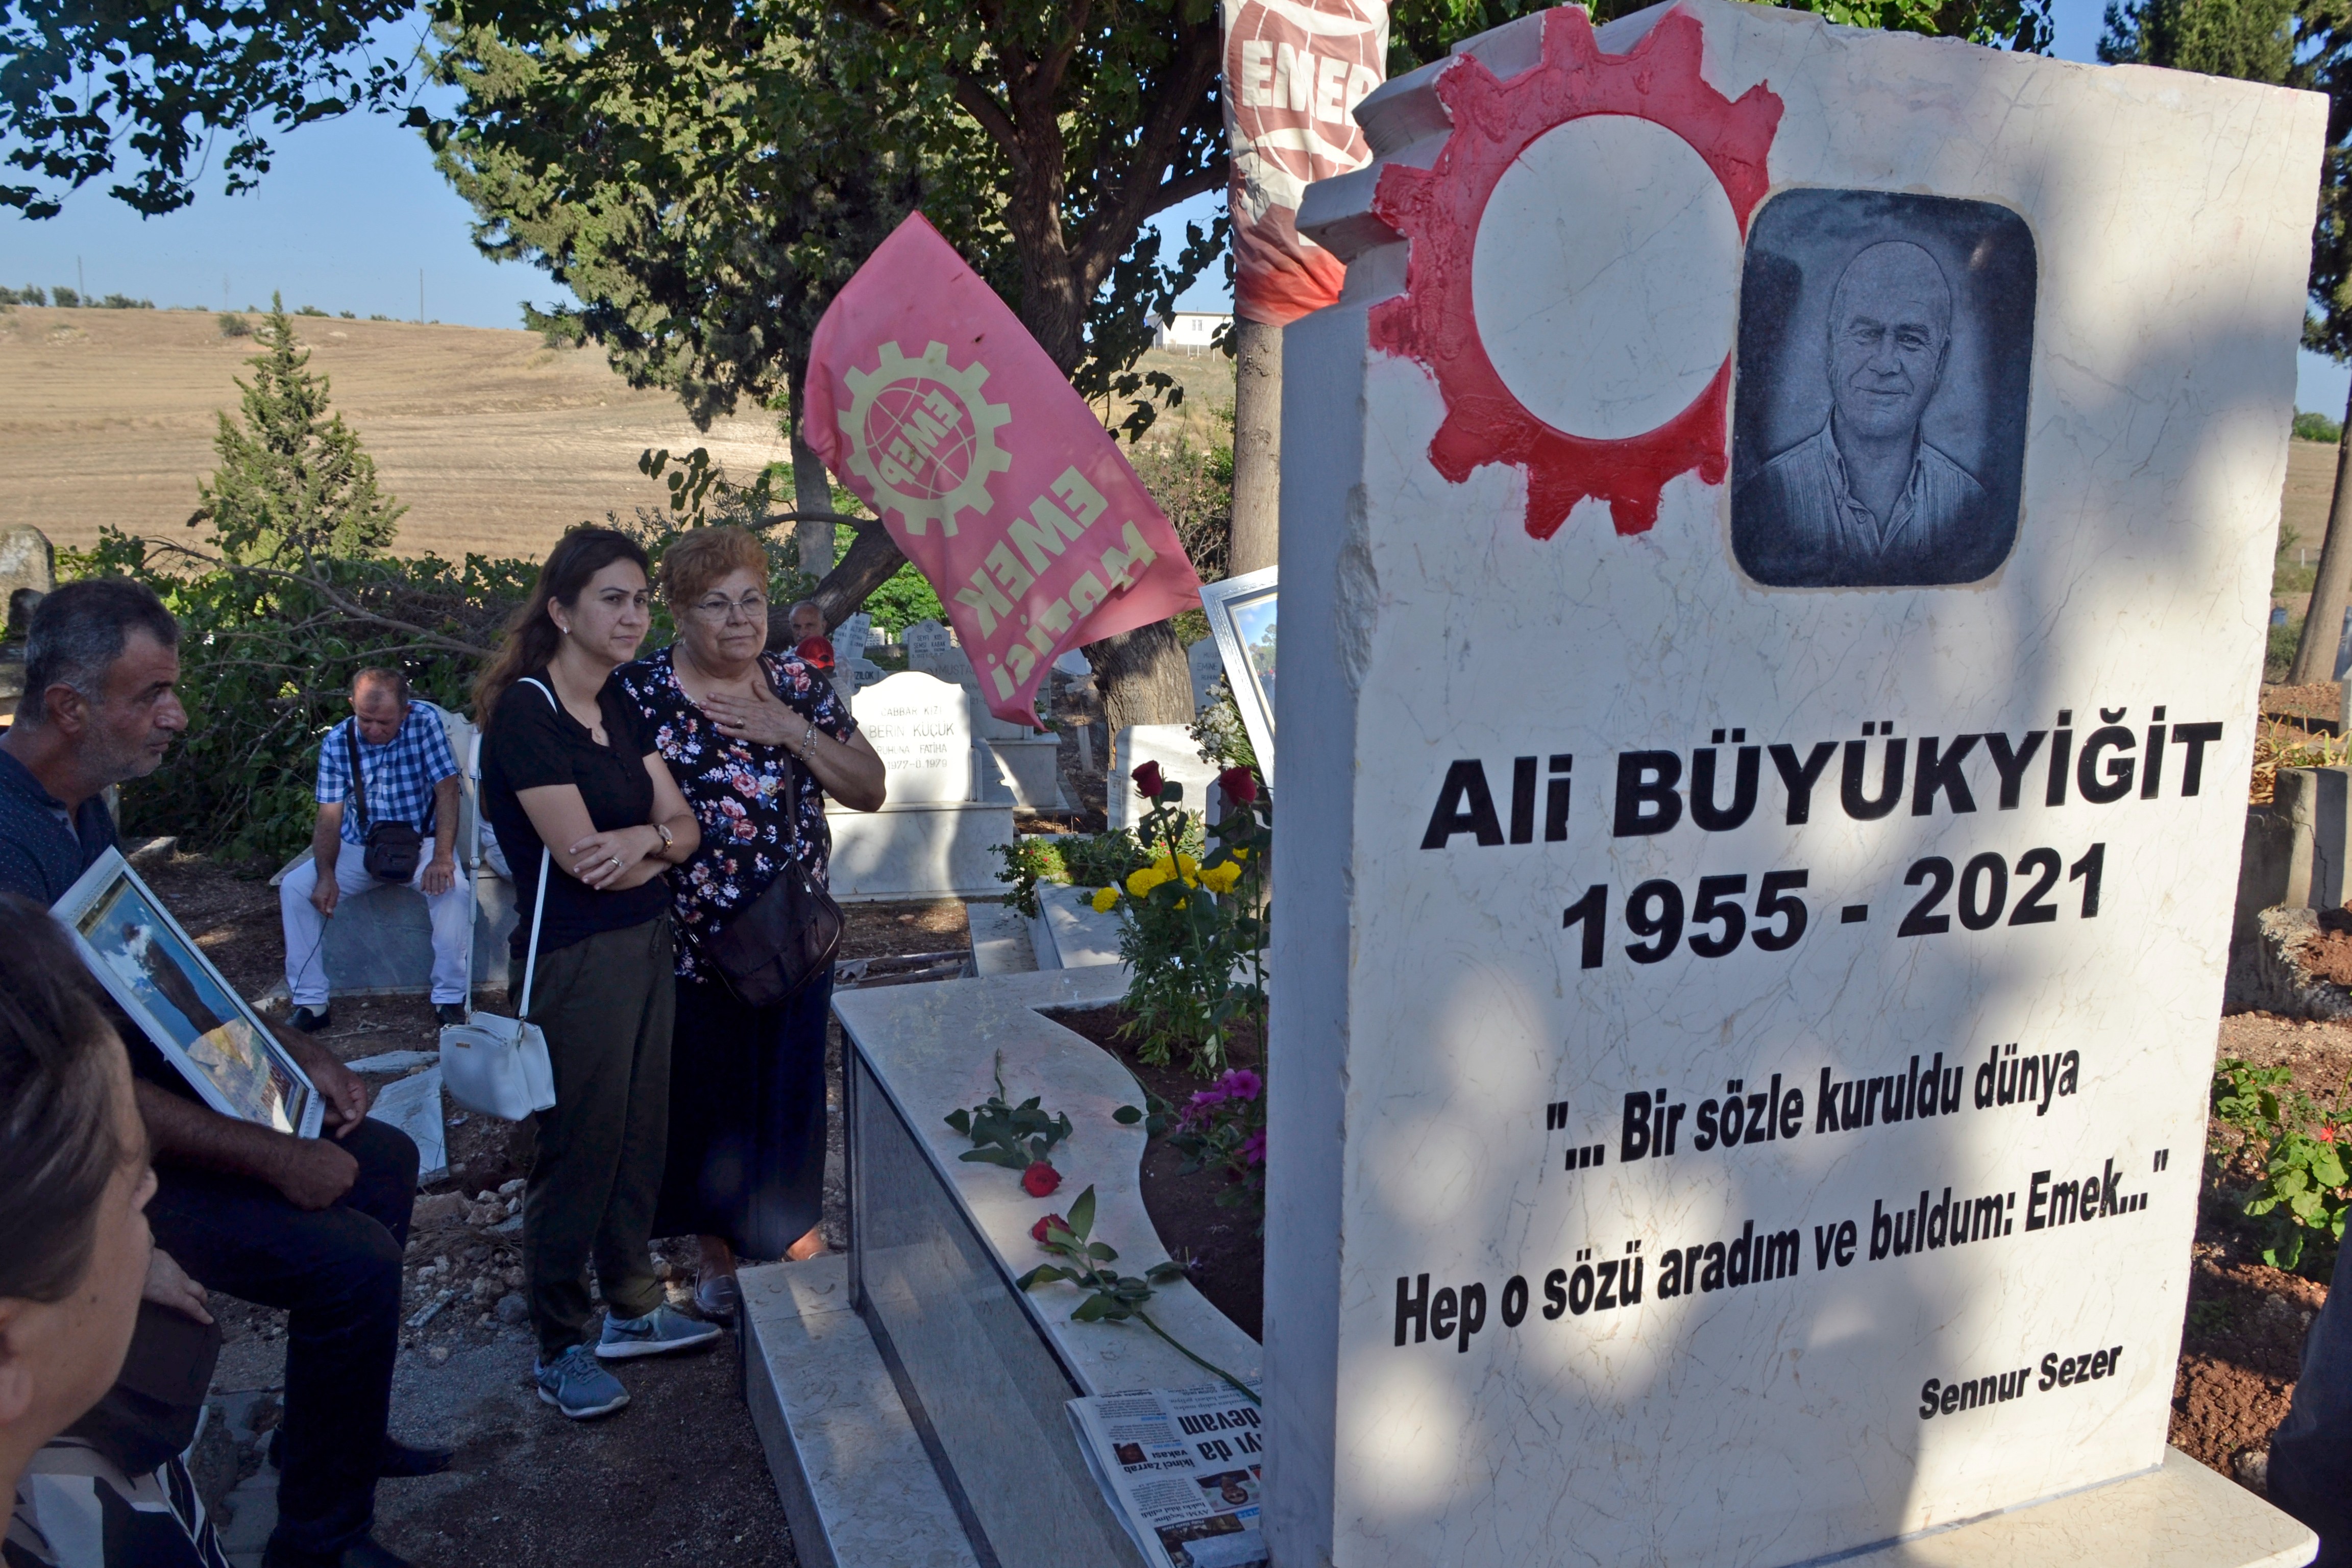 Emek Partisi Adana İl Yöneticisi Ali Büyükyiğit'in mezarı başında yapılan anma töreninden bir fotoğraf.